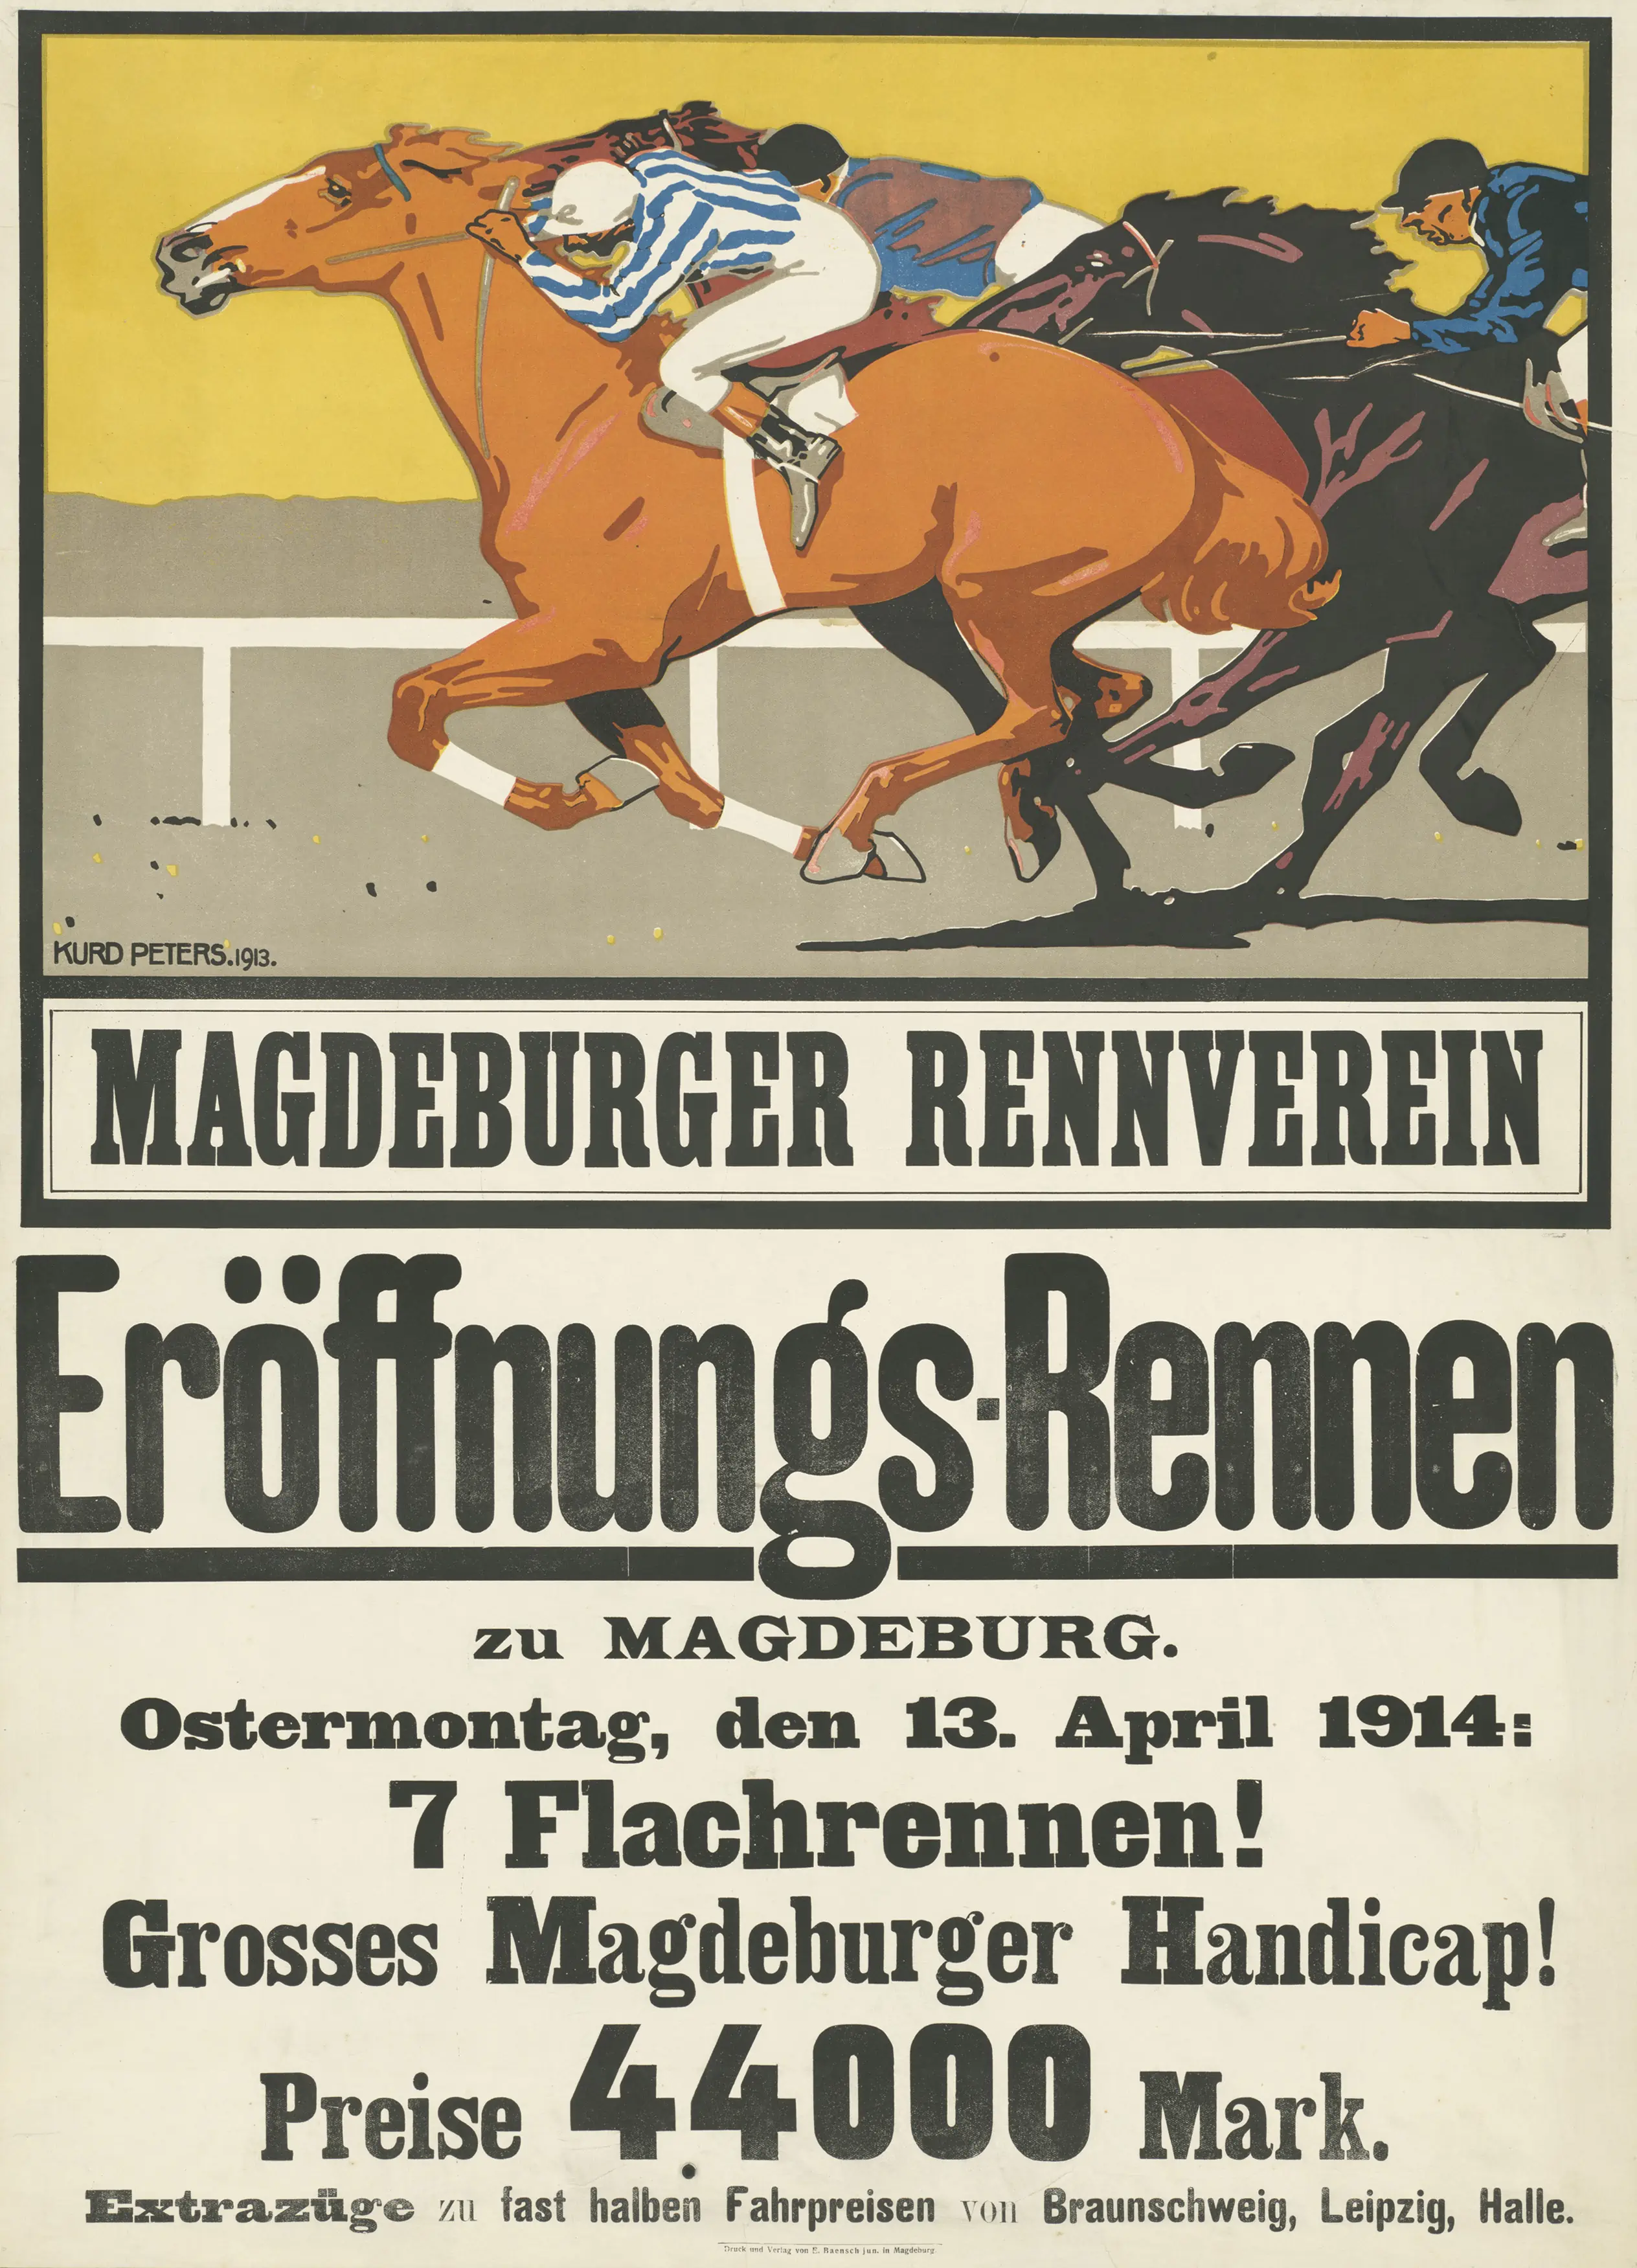 Die Abbildung zeigt ein von Dietmar Katz illustriertes Plakat zum Eröffnungsrennen des Magdeburger Rennvereins im Jahr 1914.